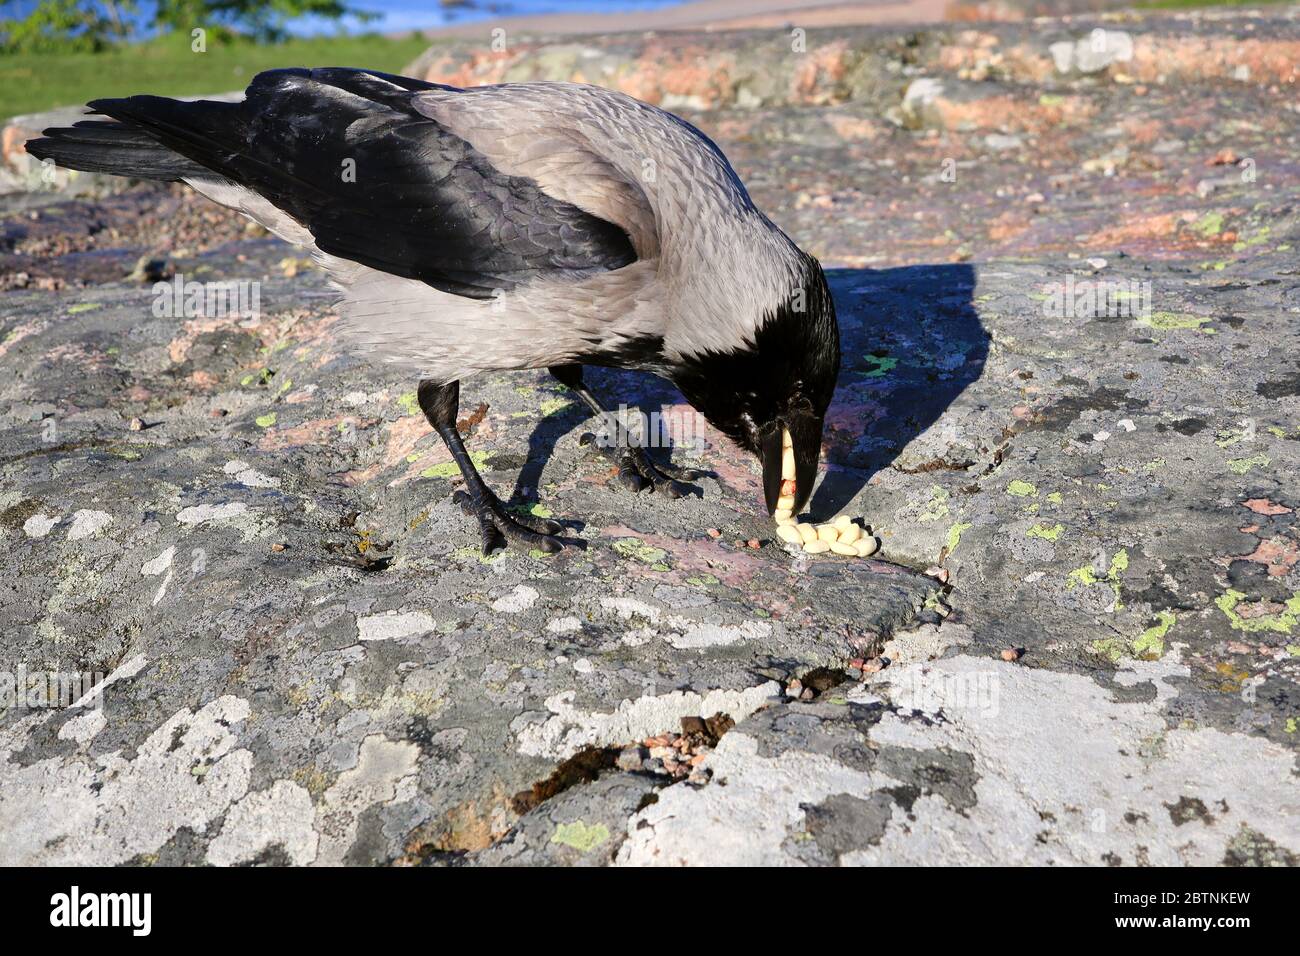 CROW encapuchado, Corvus cornix, ama comer cacahuetes. Los cuervos son aves inteligentes conocidas también para almacenar sus alimentos a corto o largo plazo. Foto de stock